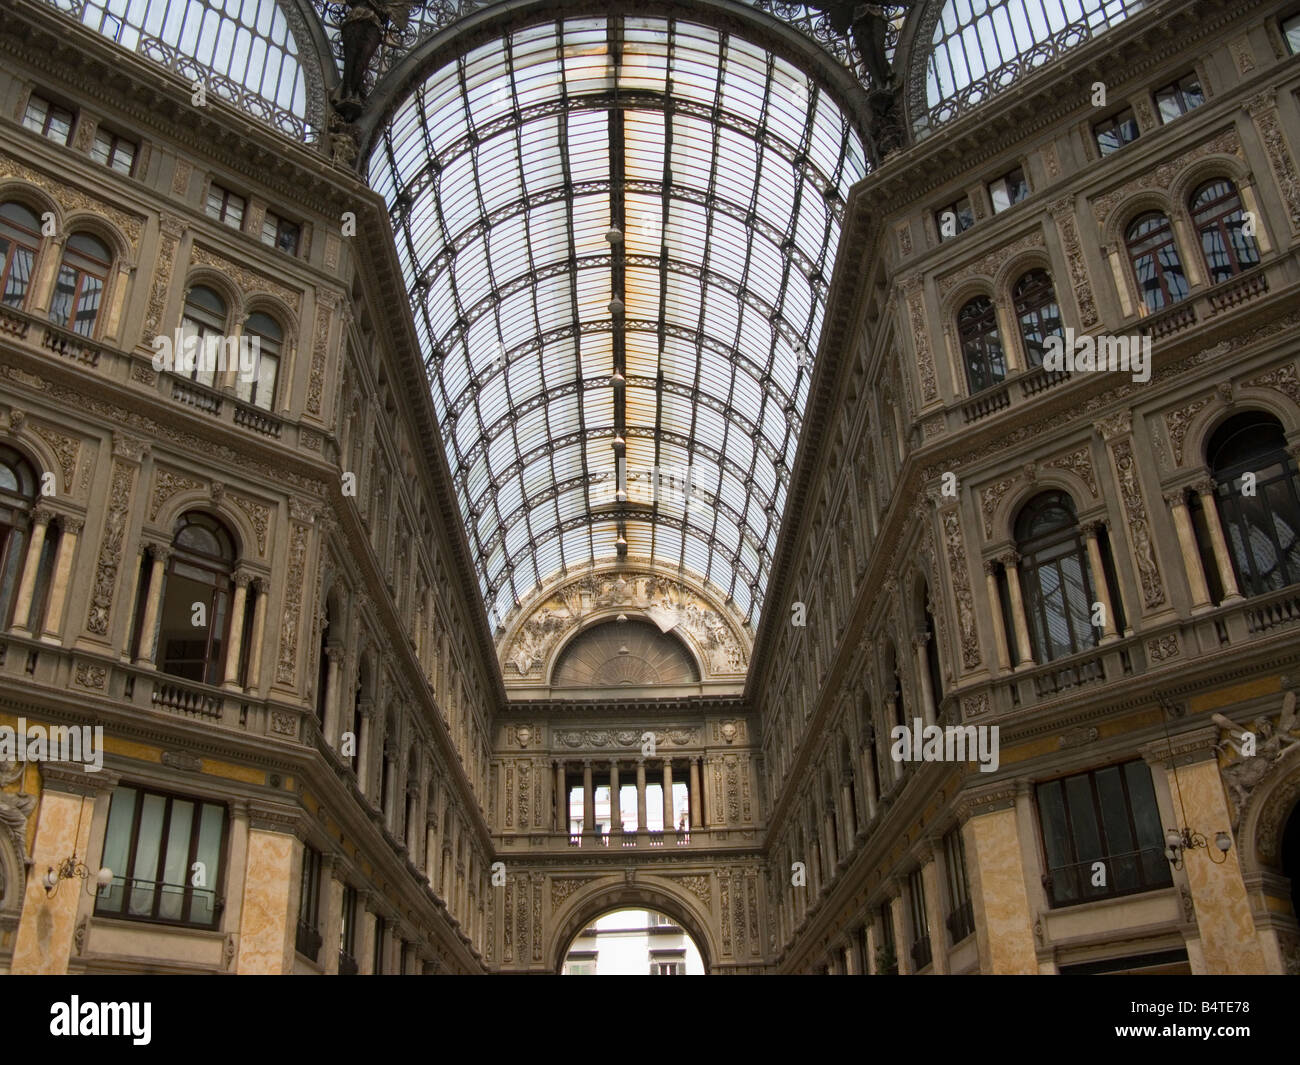 Le toit en verre de la Galleria Umberto 1 à Naples Italie Banque D'Images